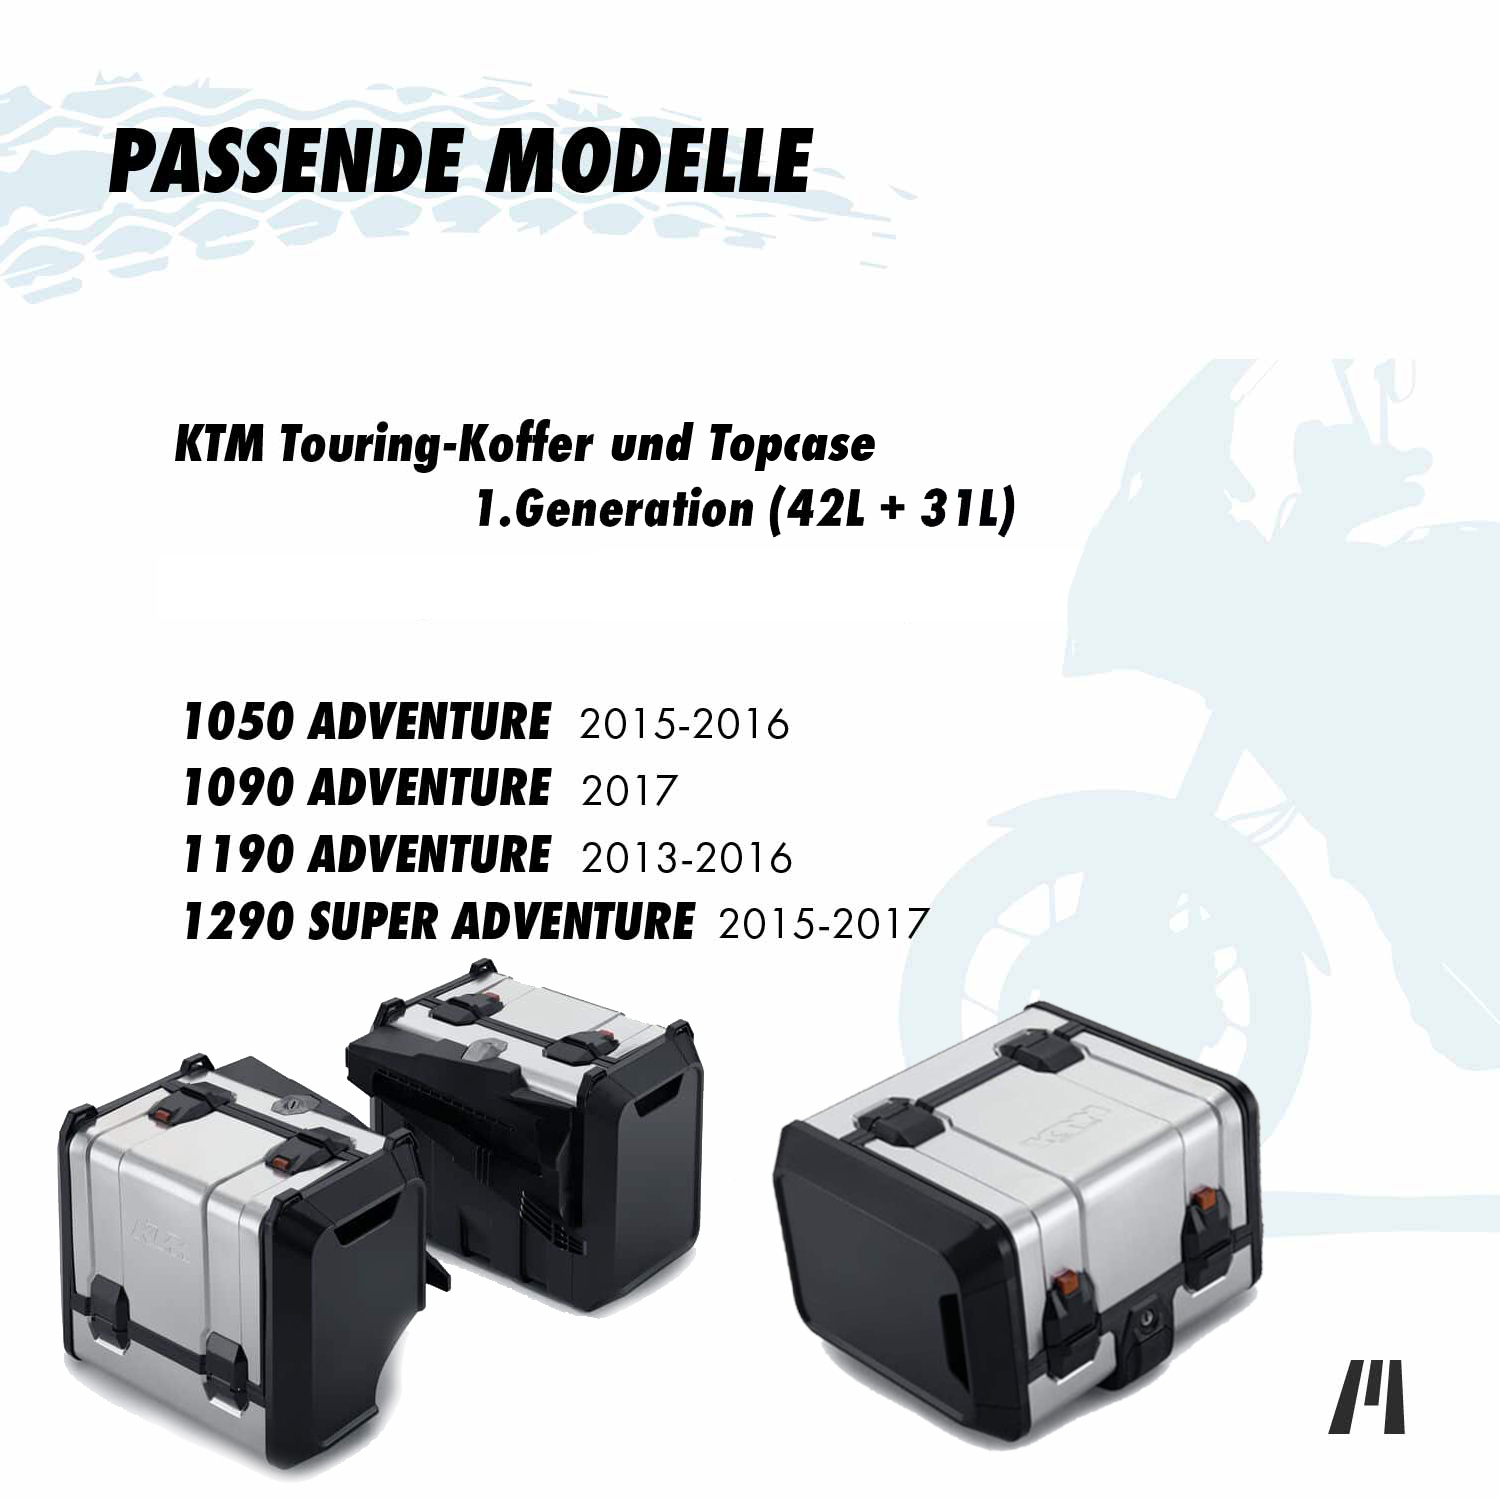 Innentaschen für KTM Adventure Touring Koffer & Topcase